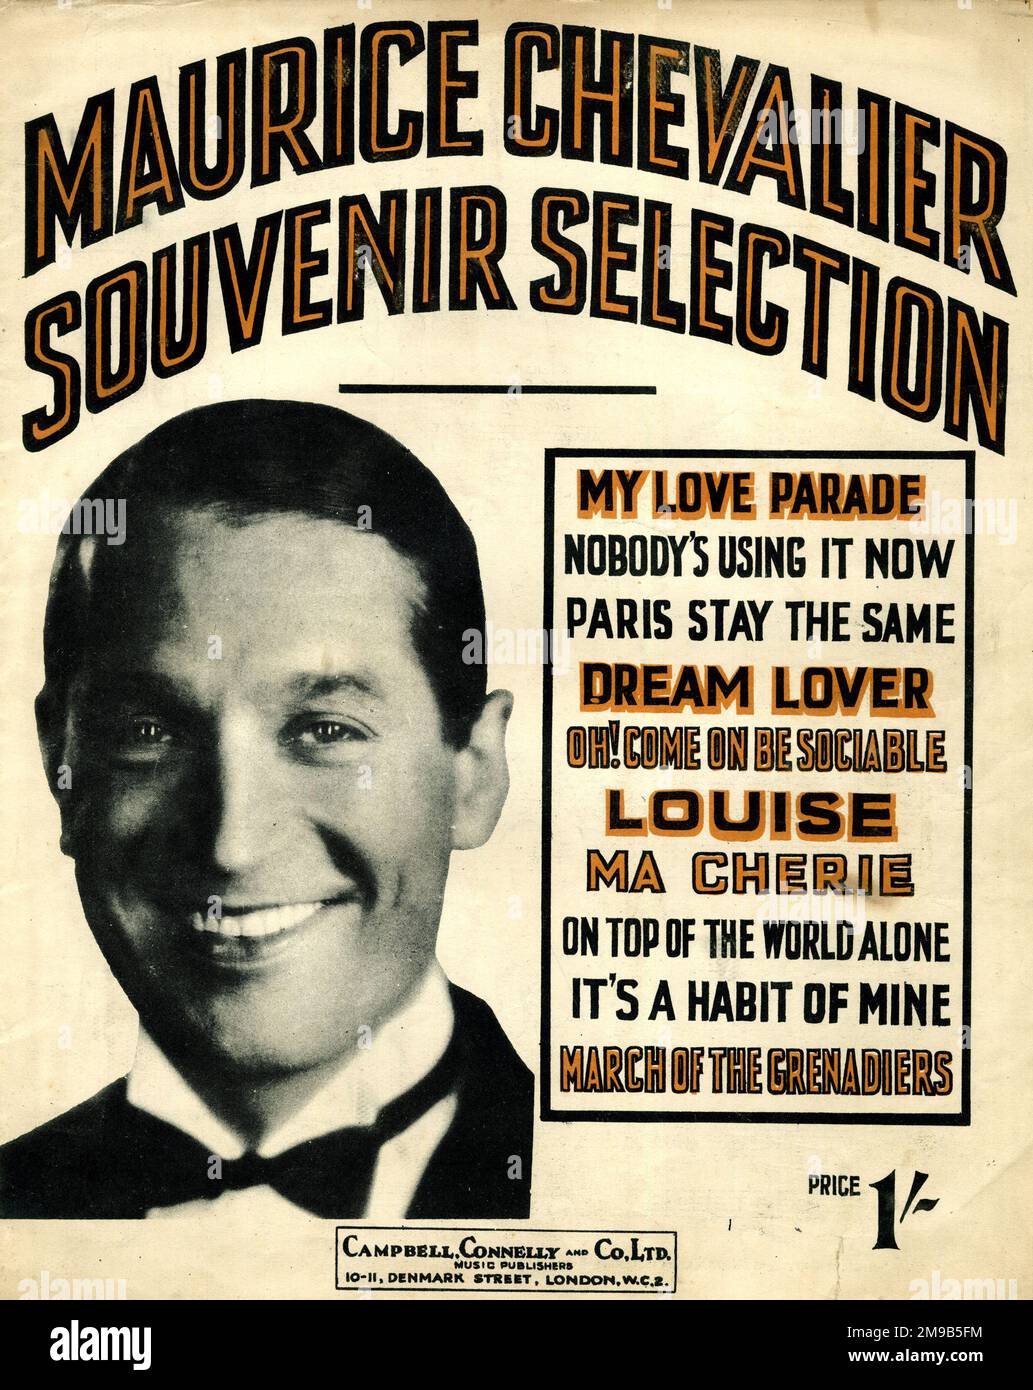 Music cover, Maurice Chevalier, Souvenir Selection of ten songs Stock Photo